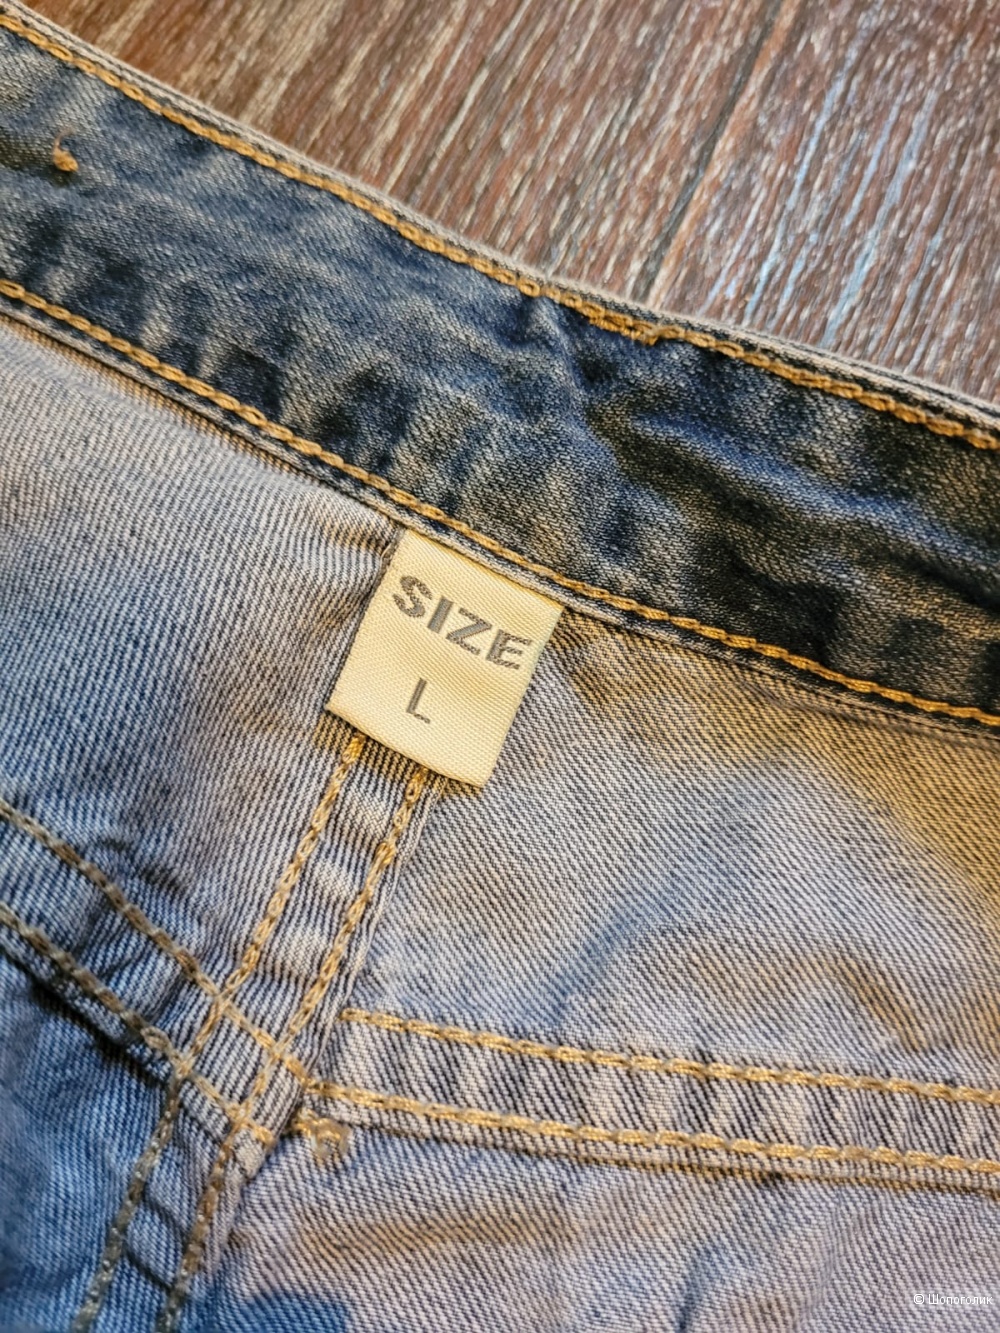 Шорты джинсовые Denim Collection, M/L